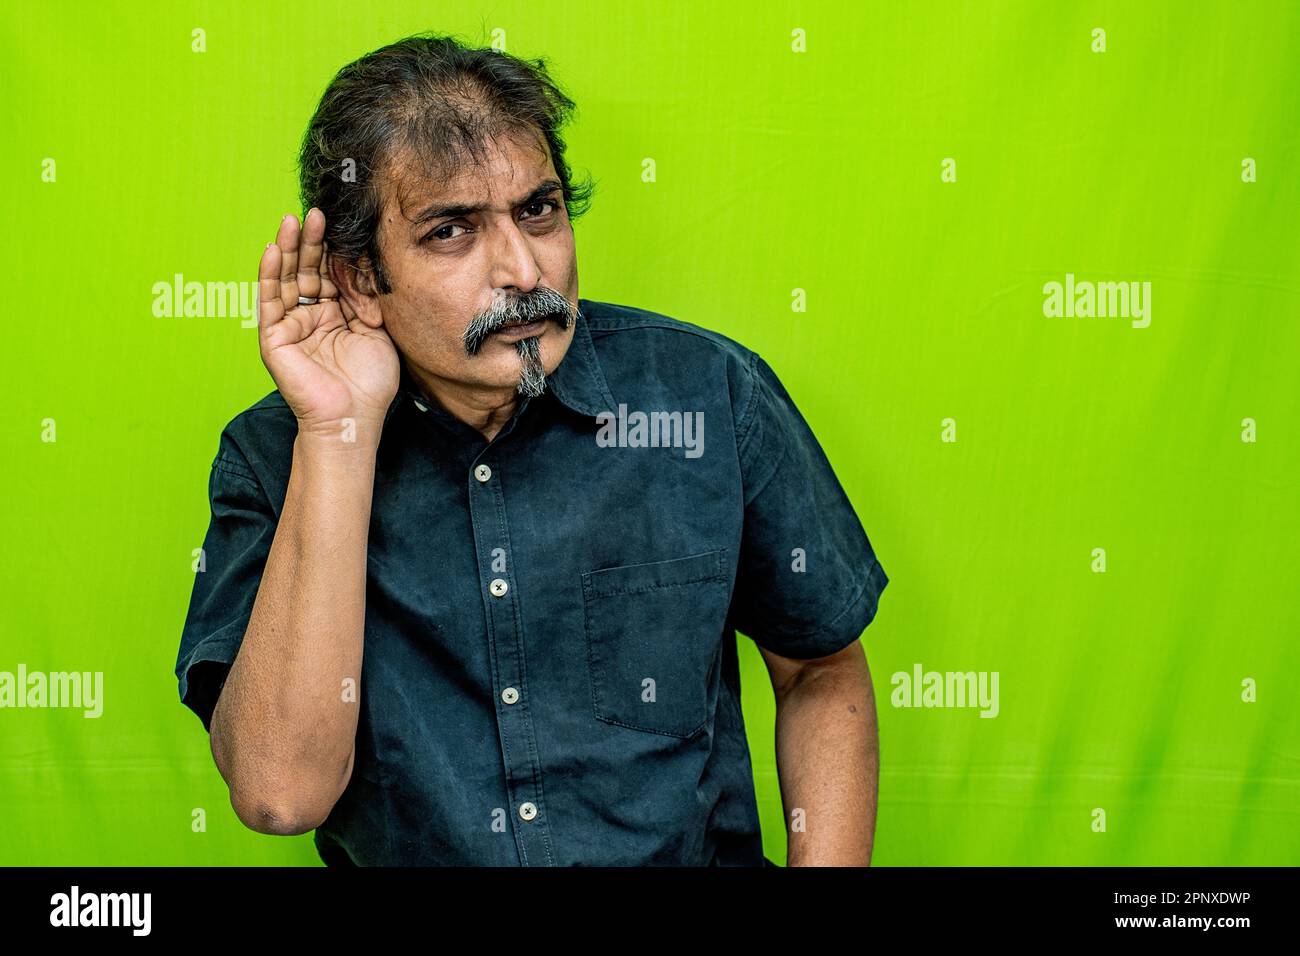 Un uomo d'affari in una camicia nera si trova contro uno sfondo verde dello schermo, cottolando con intelligenza l'orecchio destro come se cercava di sentire un suono tranquillo o segreto Foto Stock